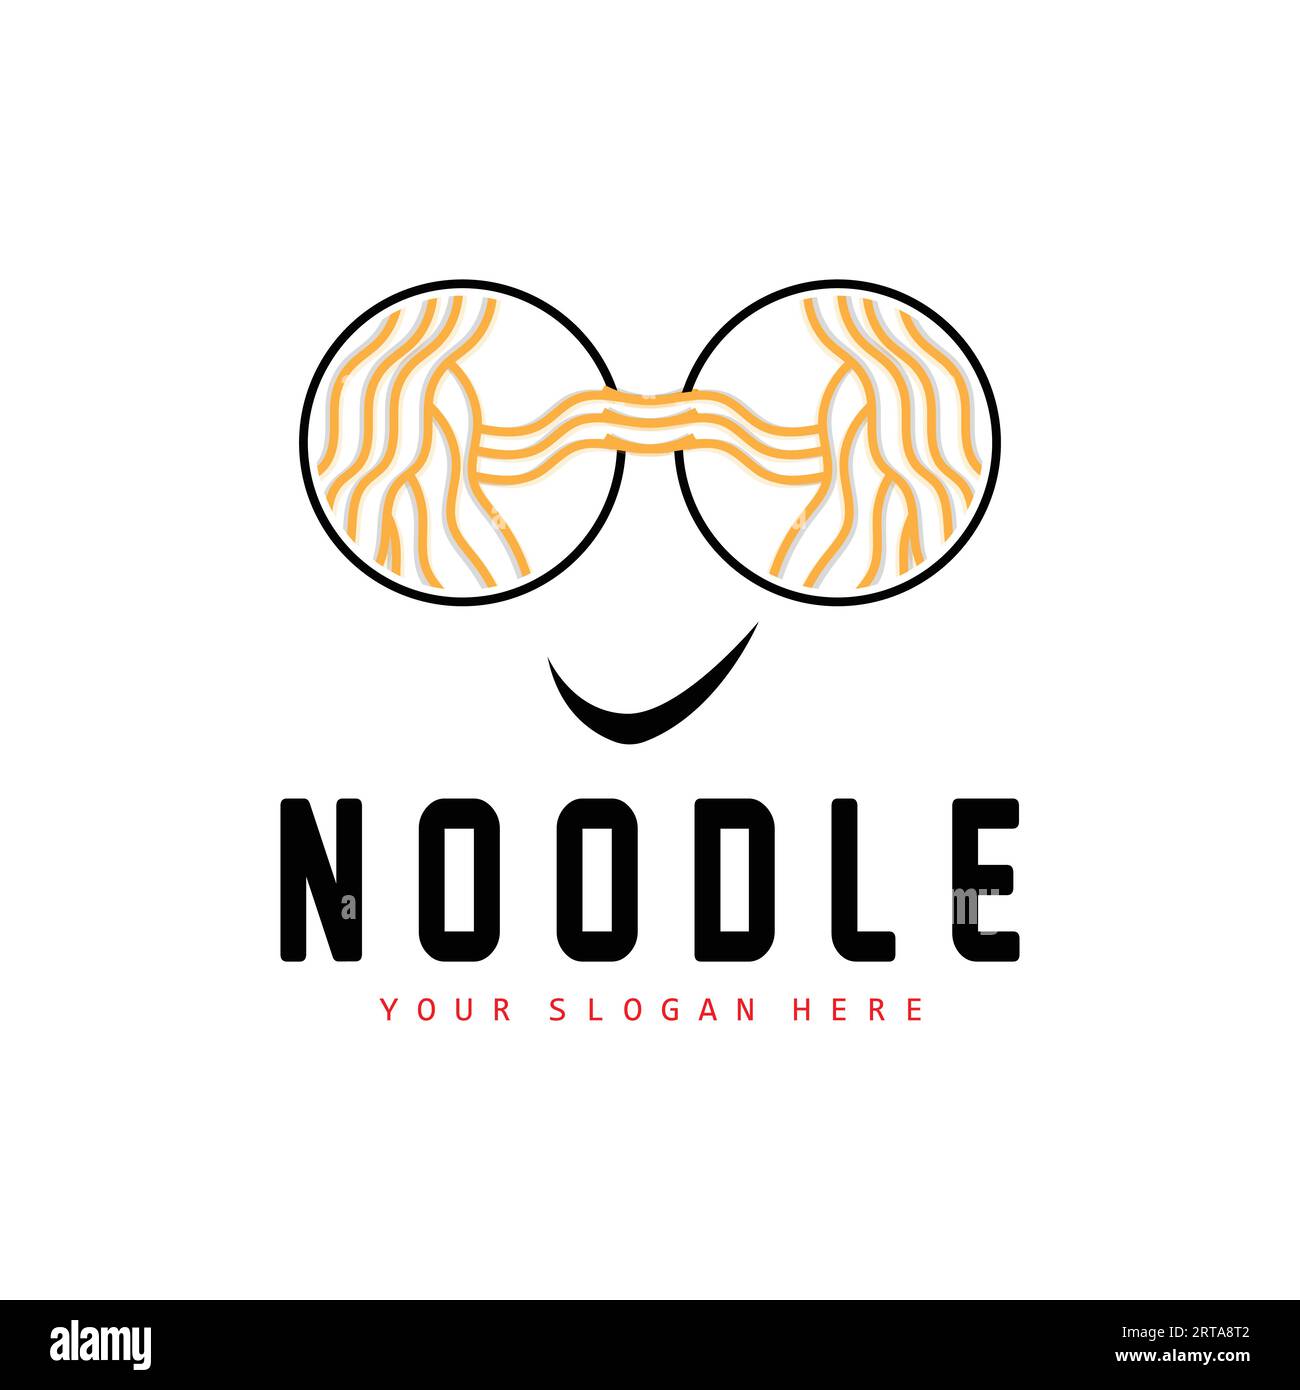 Logo Noodle, Ramen Vector, cucina cinese, design del marchio del fast food, marchio del prodotto, caffè, logo aziendale Illustrazione Vettoriale